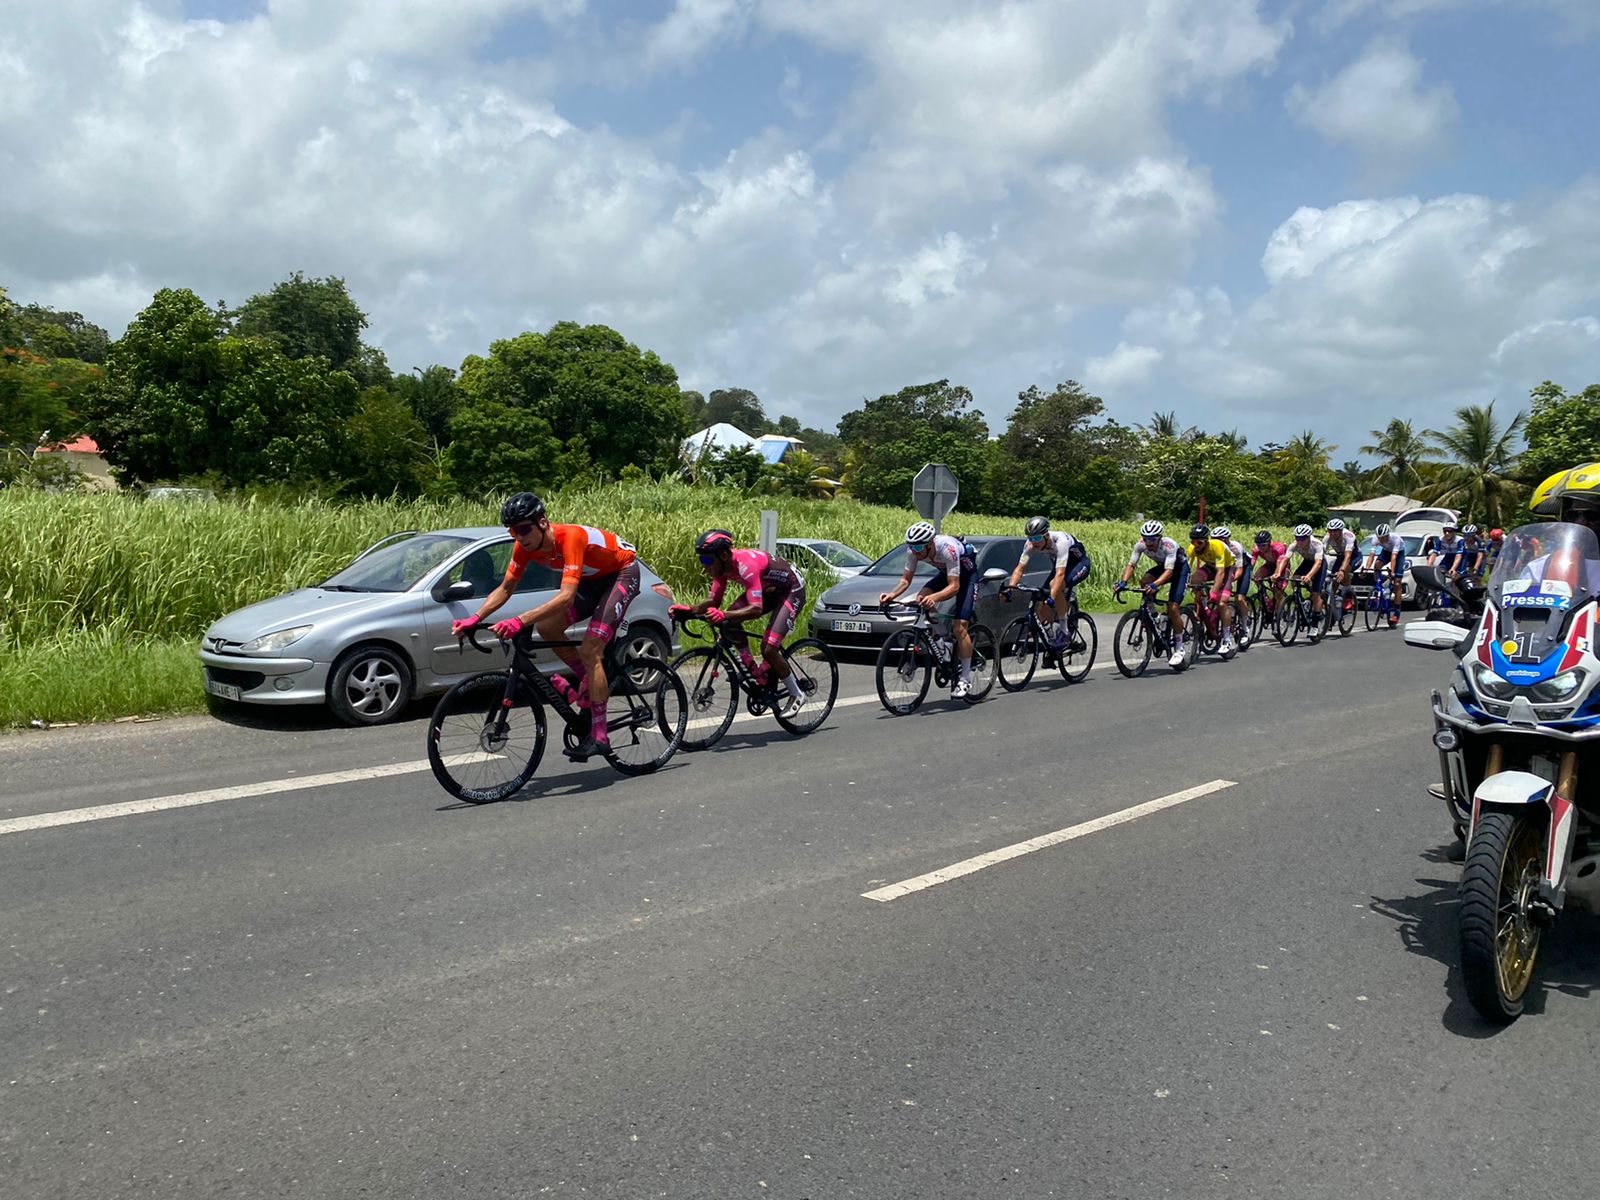     Un Tour cycliste international de Guadeloupe « novateur »

